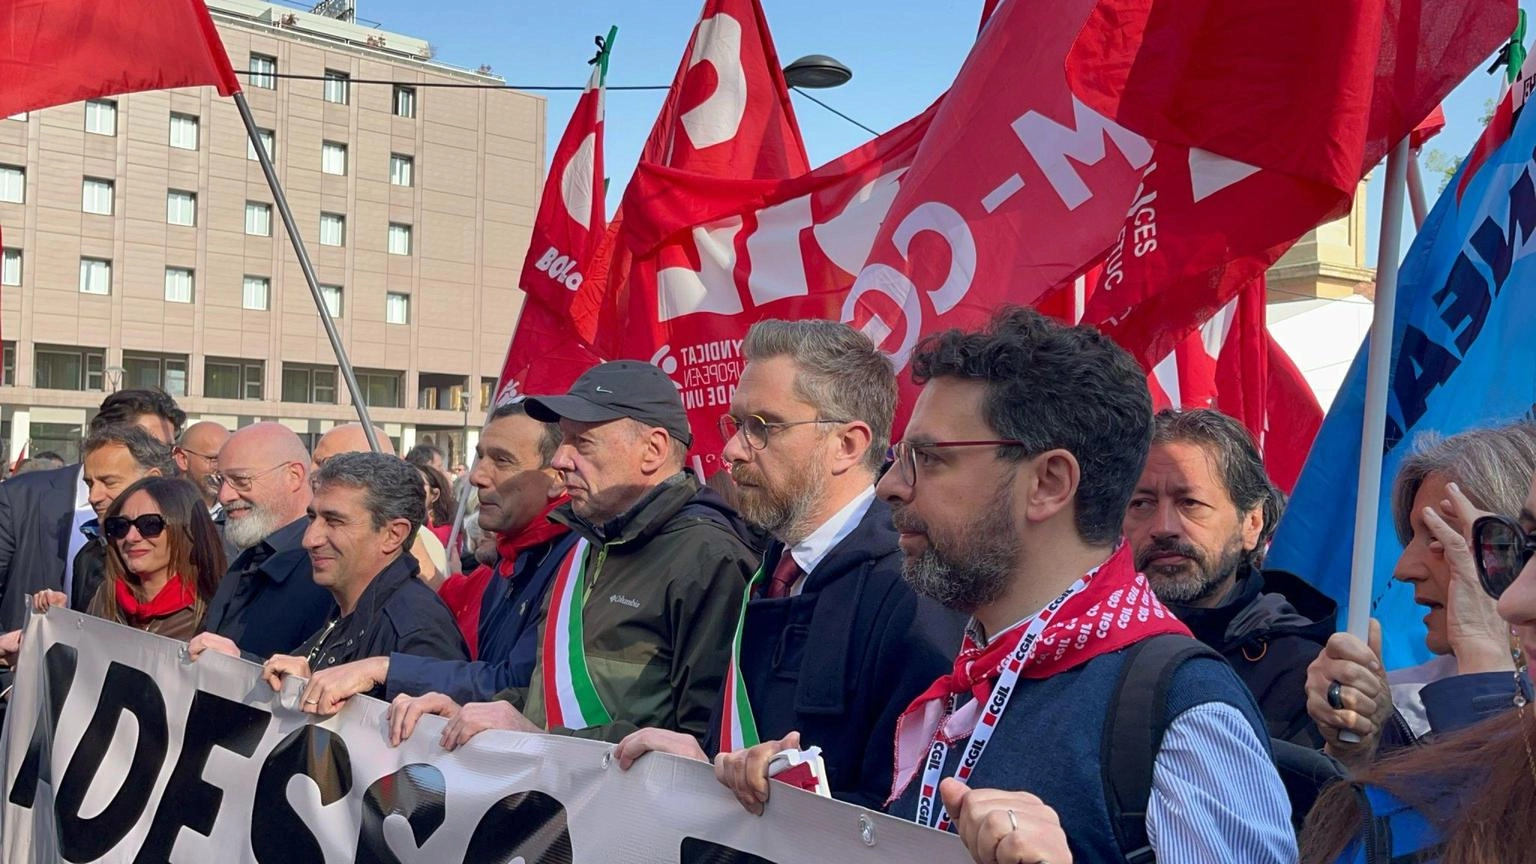 Strage Suviana: a Bologna sciopero generale e corteo